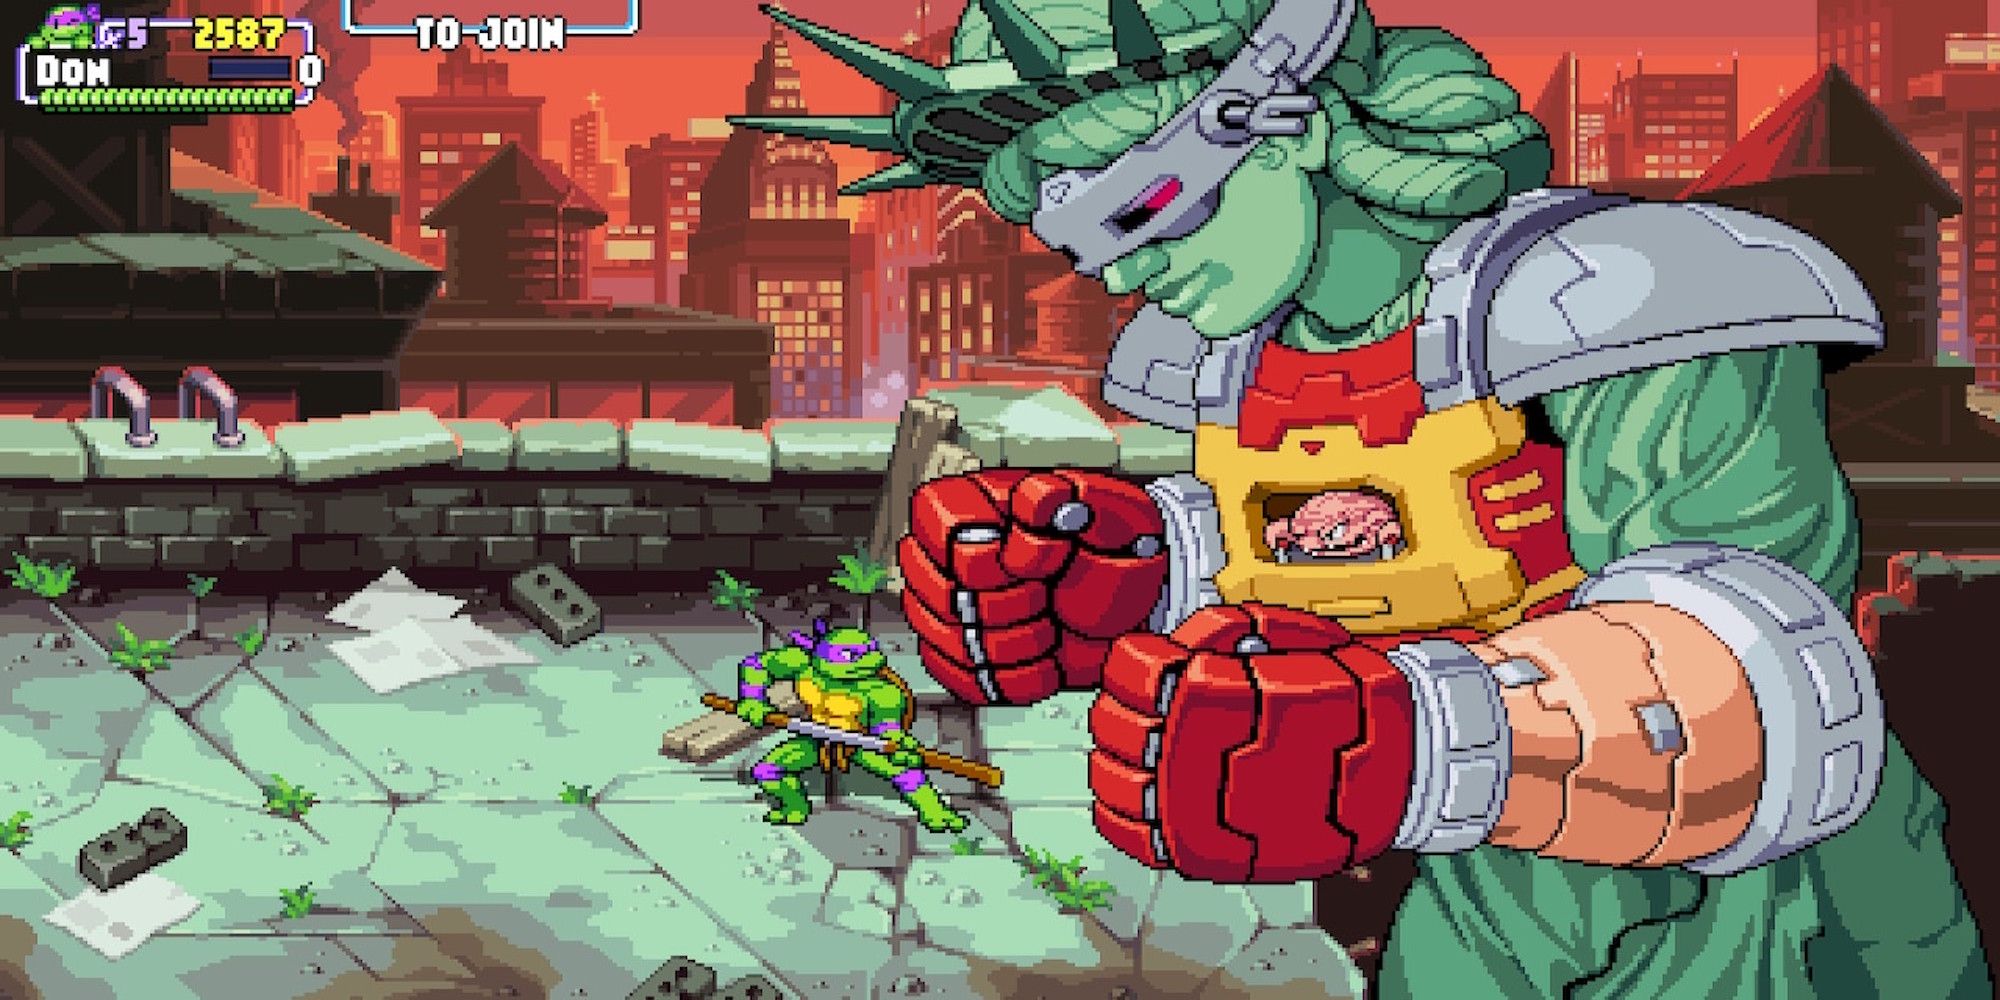 Fighting a boss in Teenage Mutant Ninja Turtles Shredder's Revenge